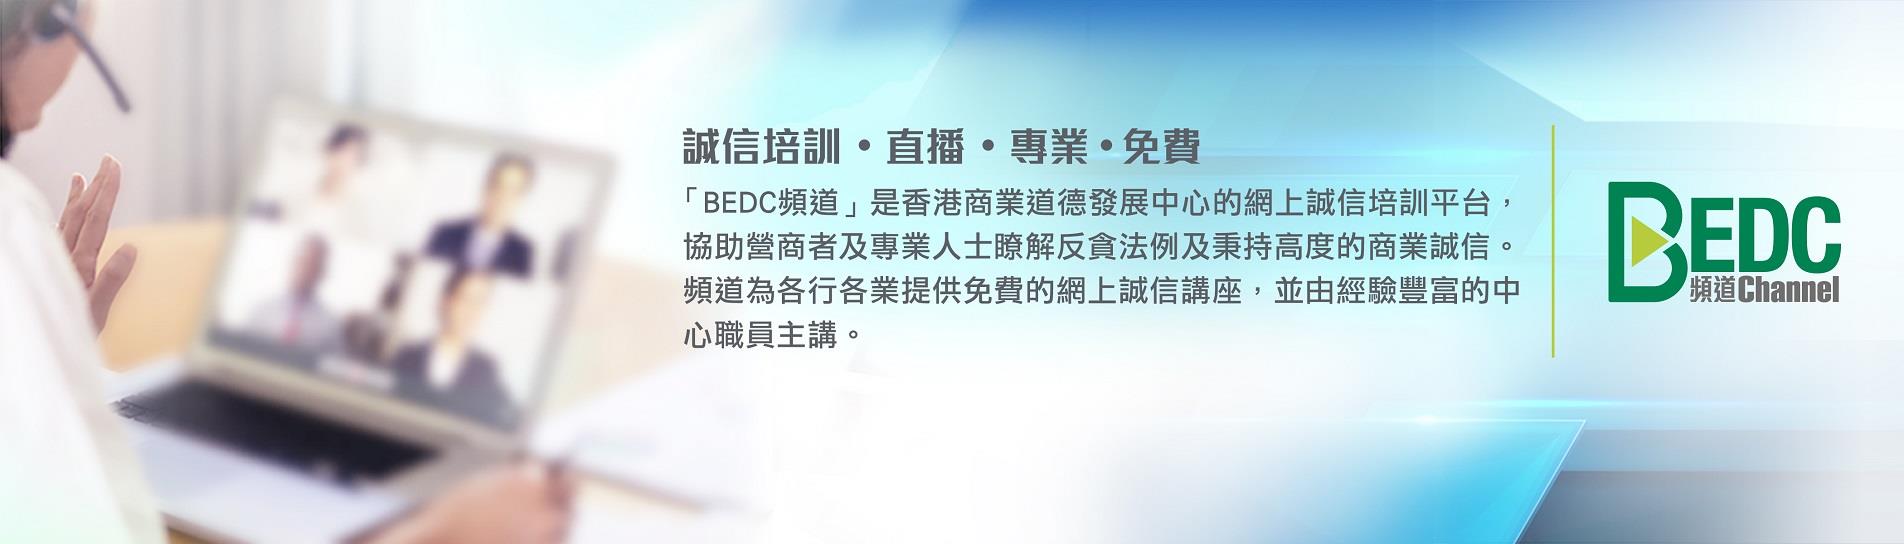 「BEDC 频道」是香港商业道德发展中心的网上诚信培训平台，协助营商者及专业人士瞭解反贪法例及秉持高度的商业诚信。频道为各行各业提供免费的网上诚信讲座，并由经验丰富的中心职员主讲。